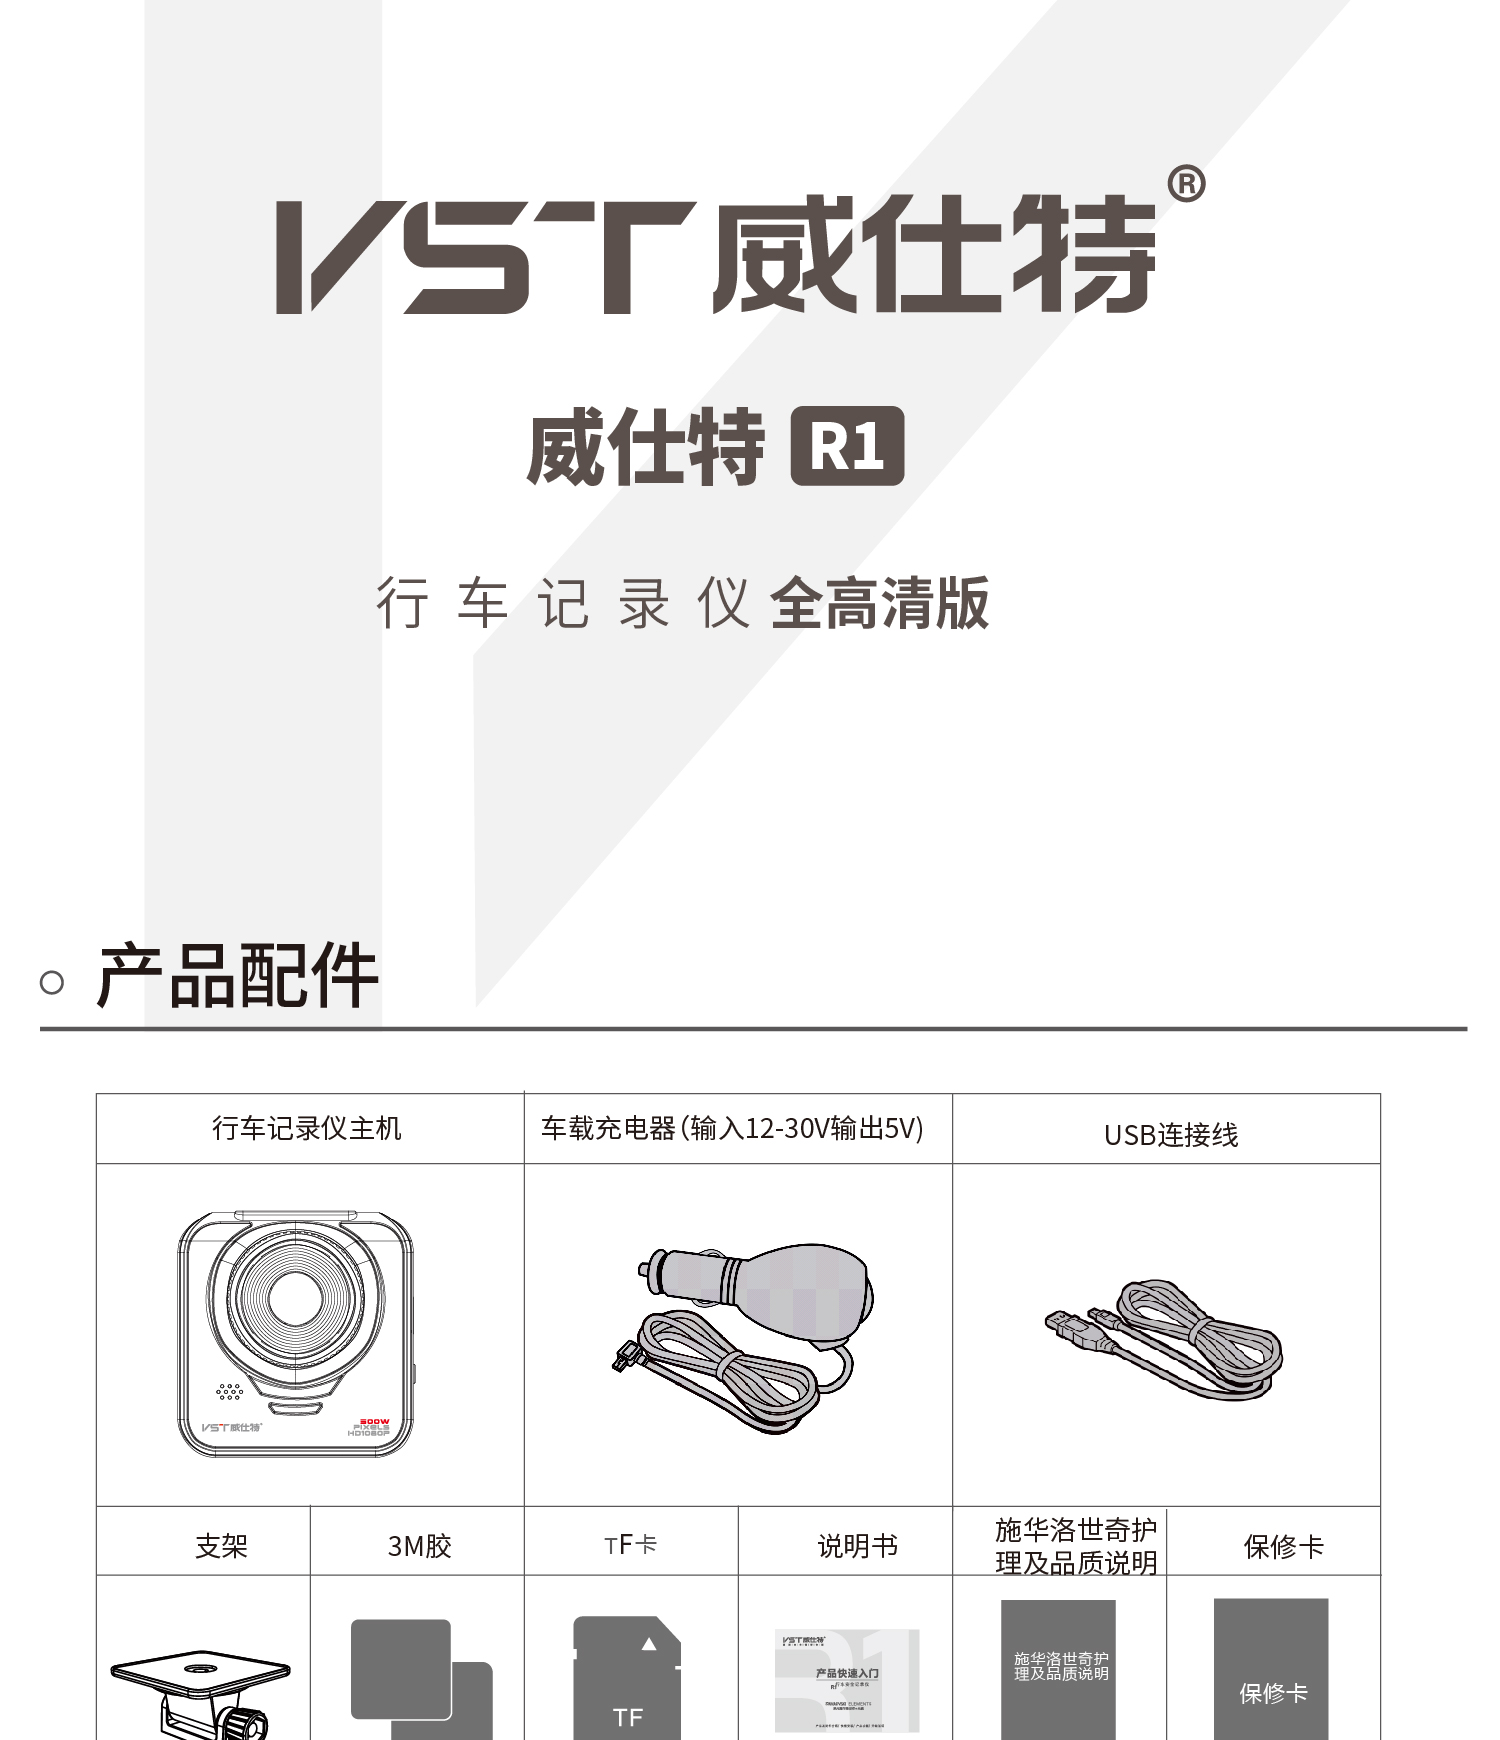 威仕特 VST R1全高清版 使用说明书 封面